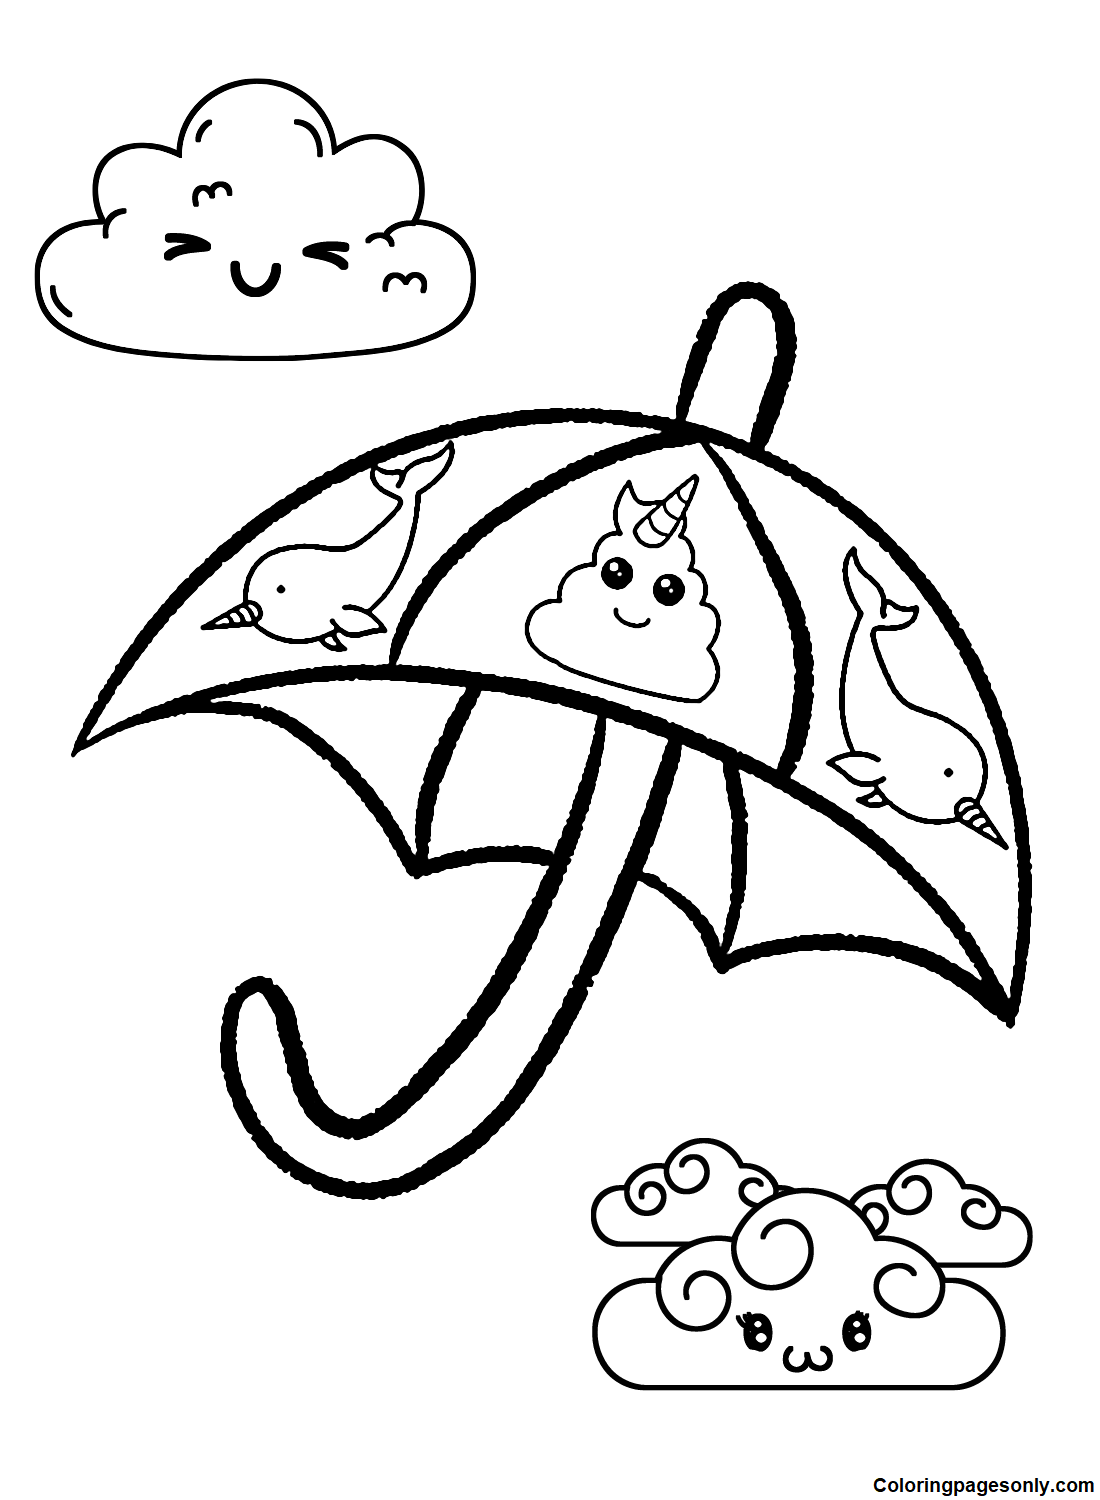 Guarda-chuva adorável da Umbrella